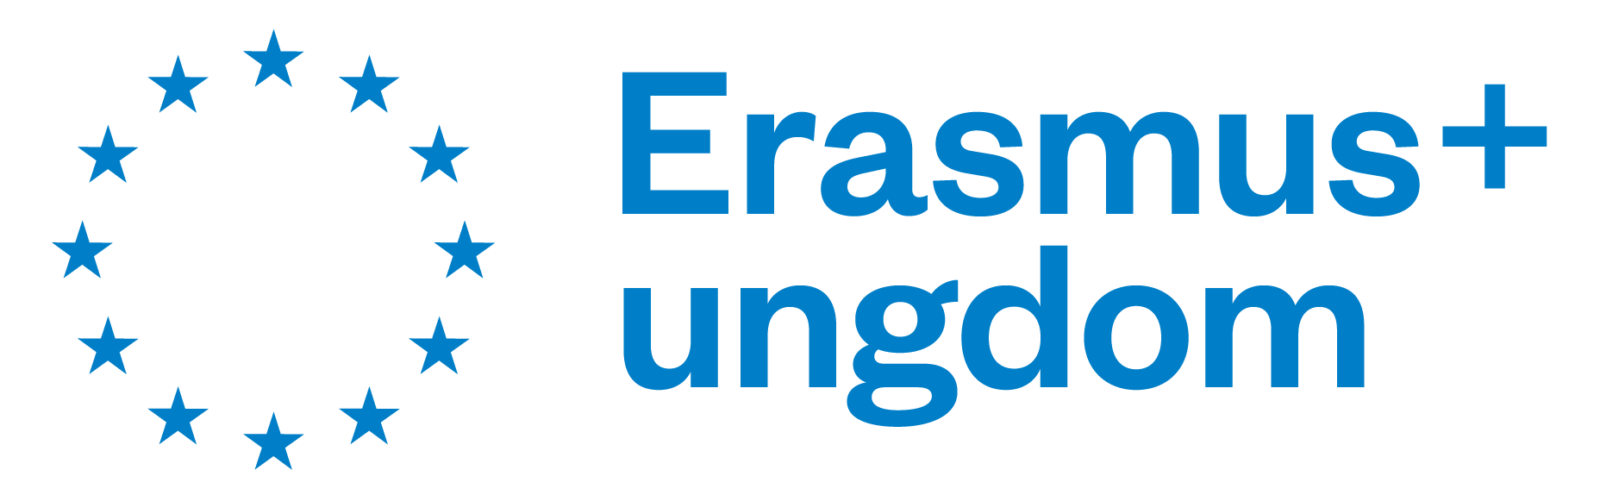 Logoen til Erasmus+ ungdom